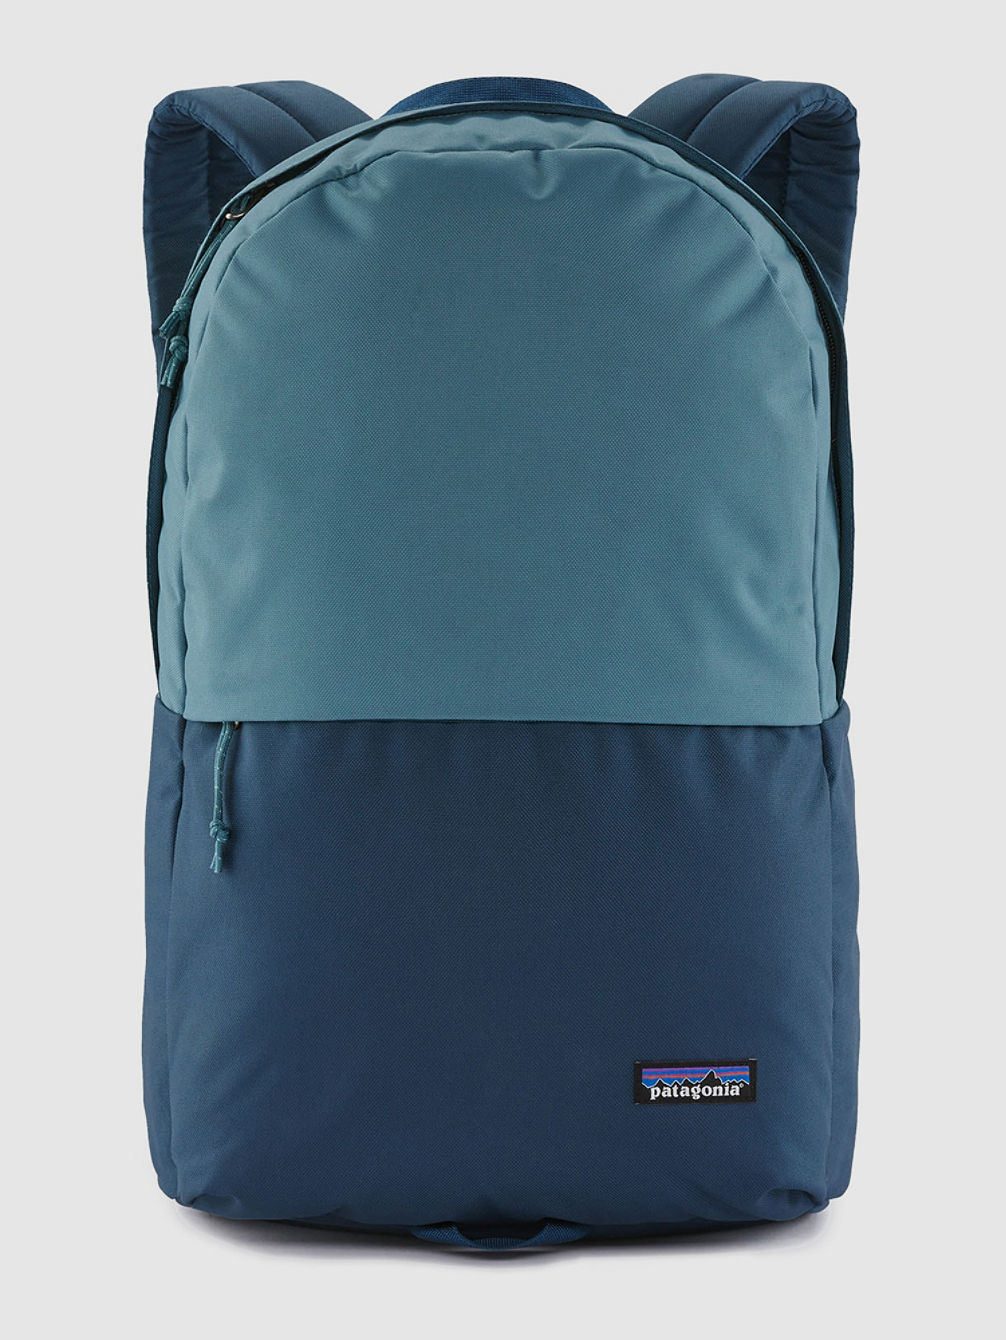 Arbor Zip Backpack